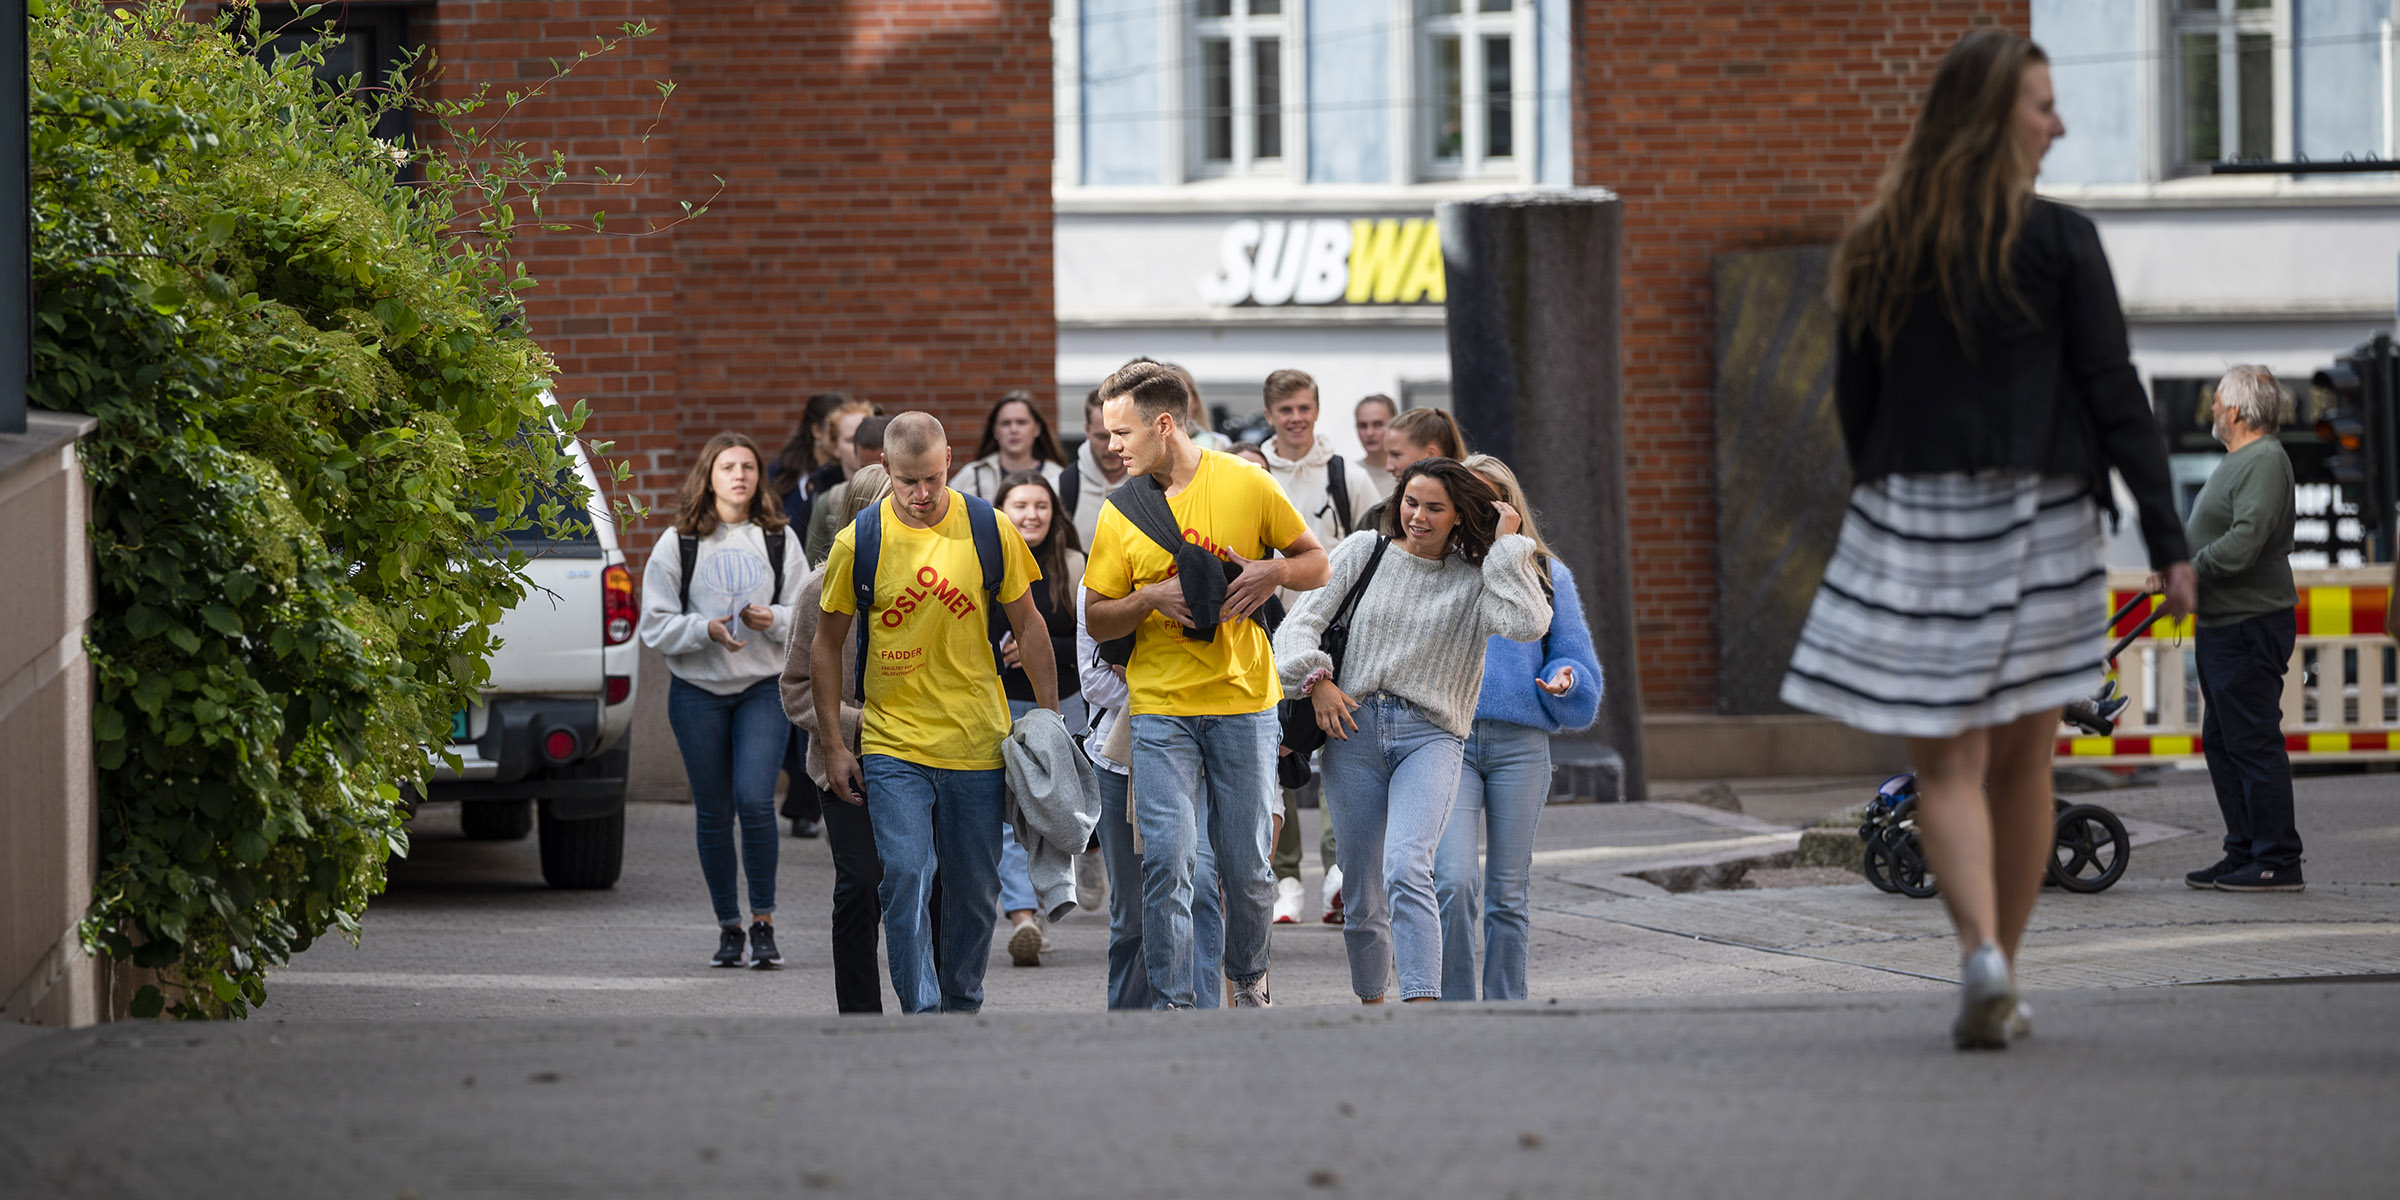 Nye studenter som følger etter faddere med gule t-skjorter ute på Campus Pilestredet.